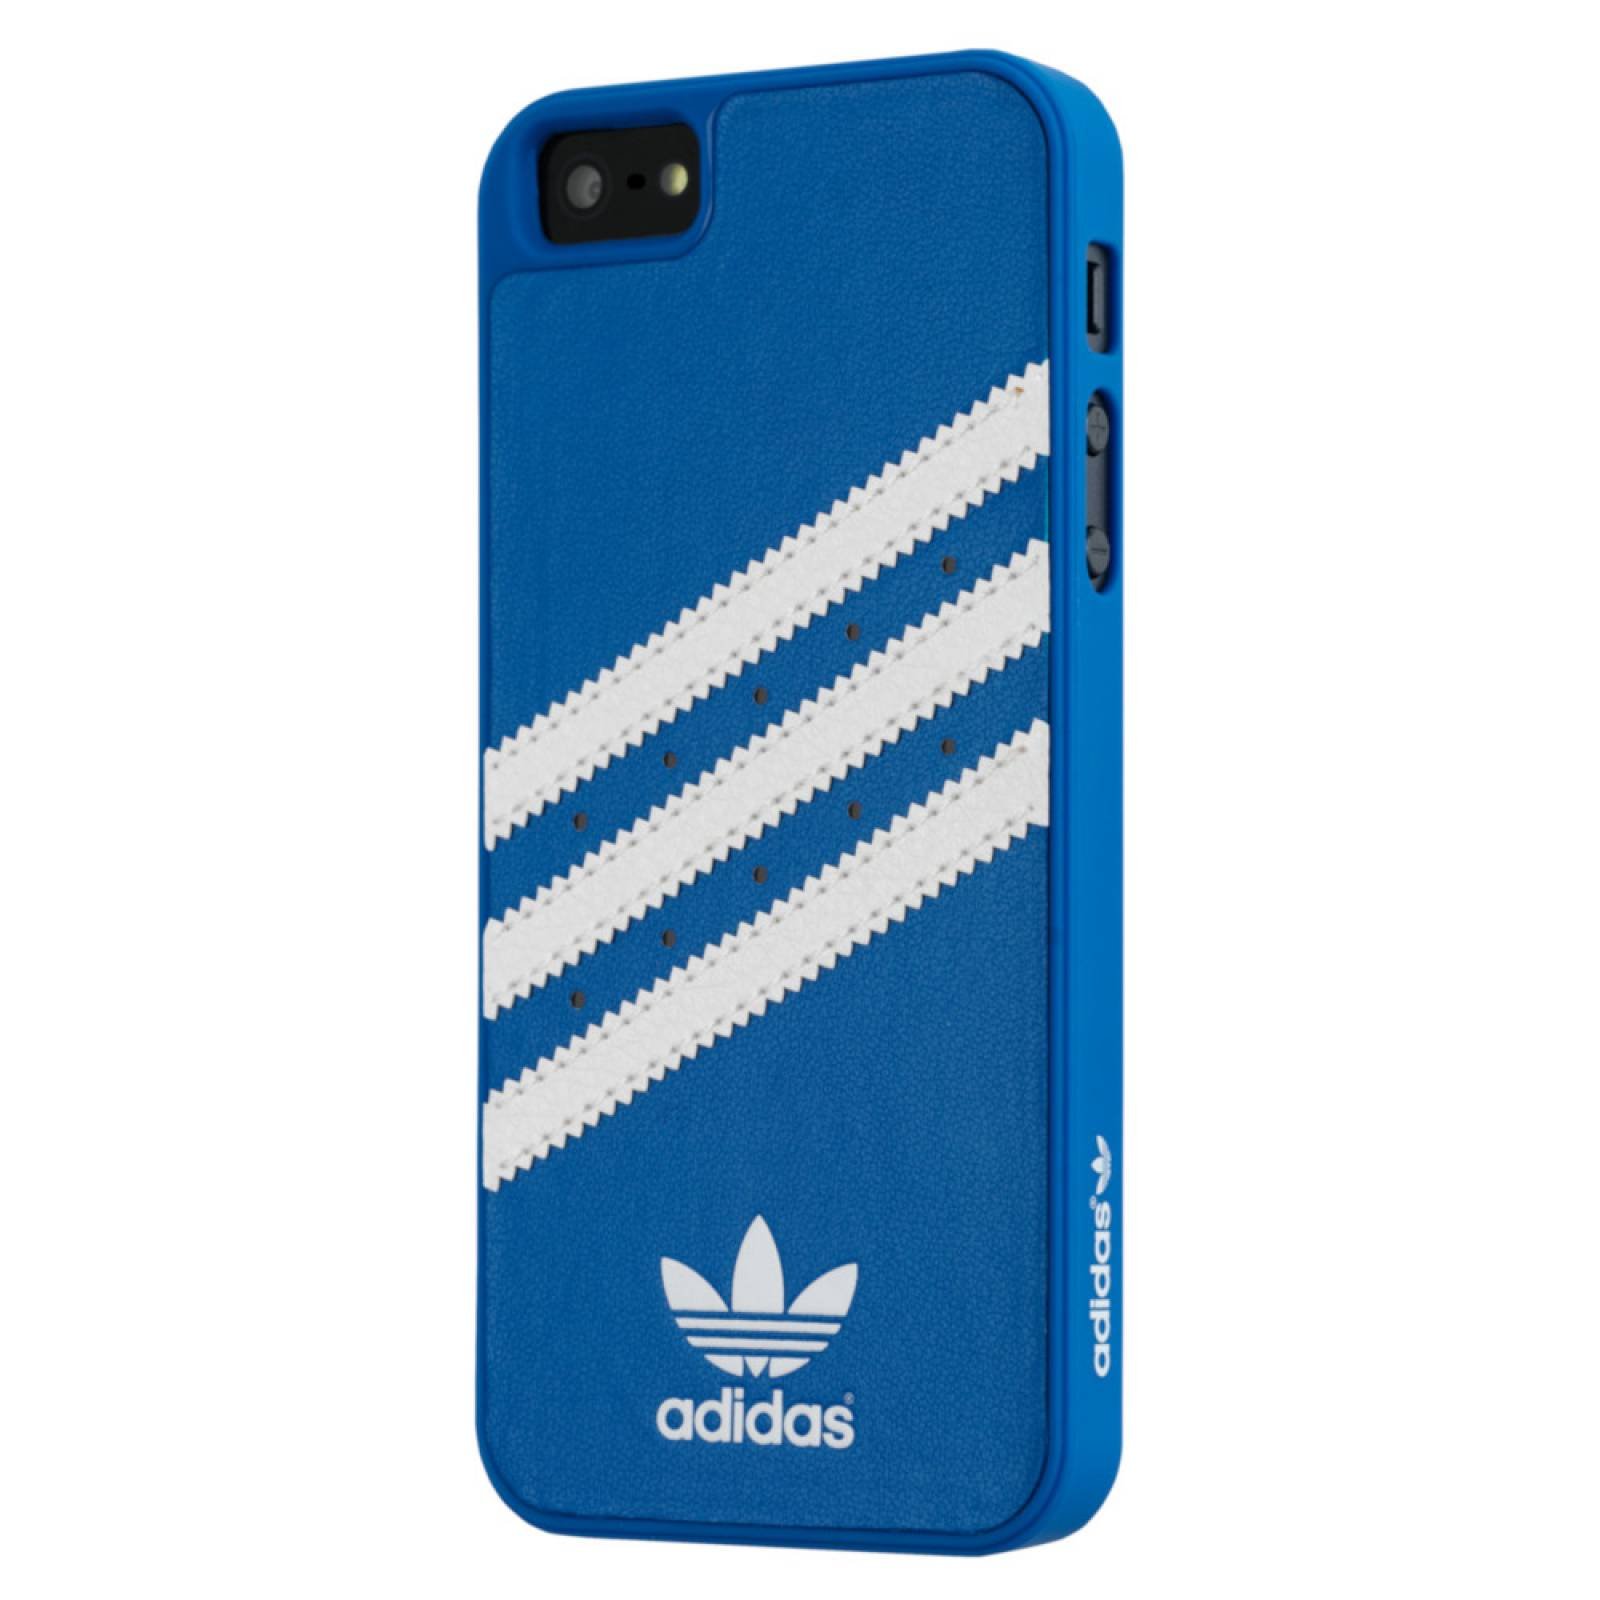 Funda Stripes Adidas Originals iPhone 5c